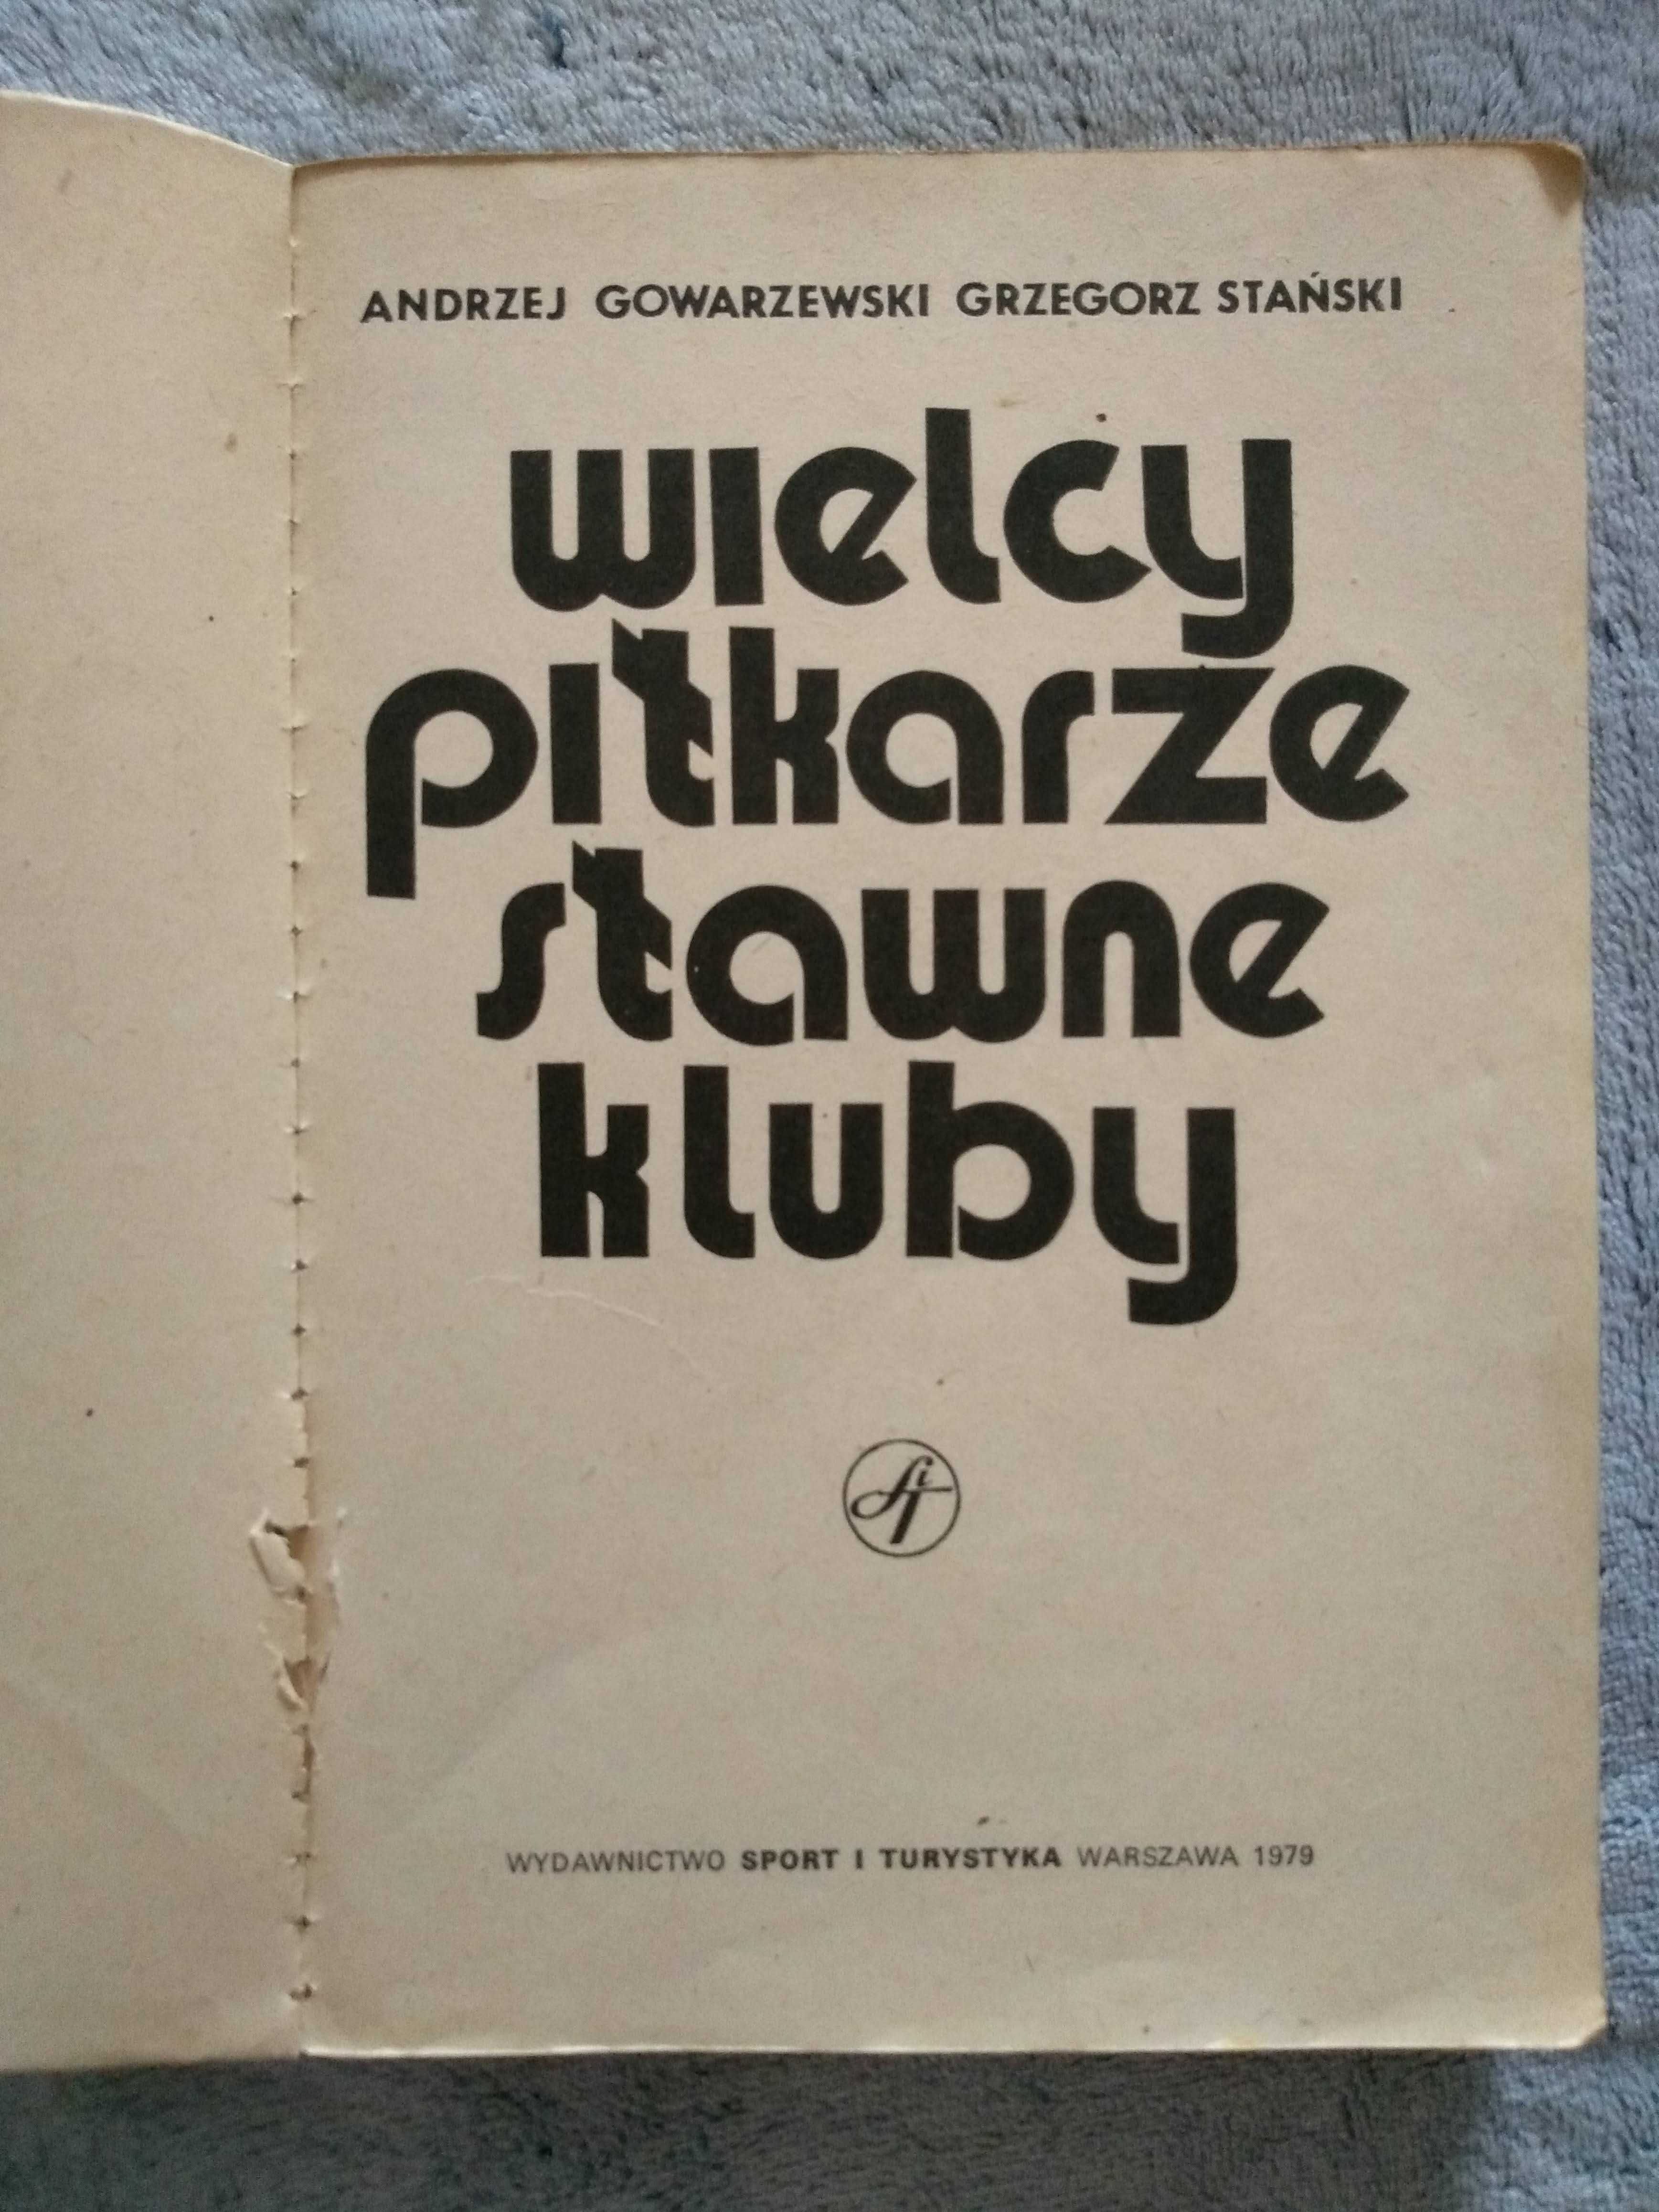 Wielcy piłkarze, sławne kluby - A.Gowarzewski, G.Stański z '79 roku